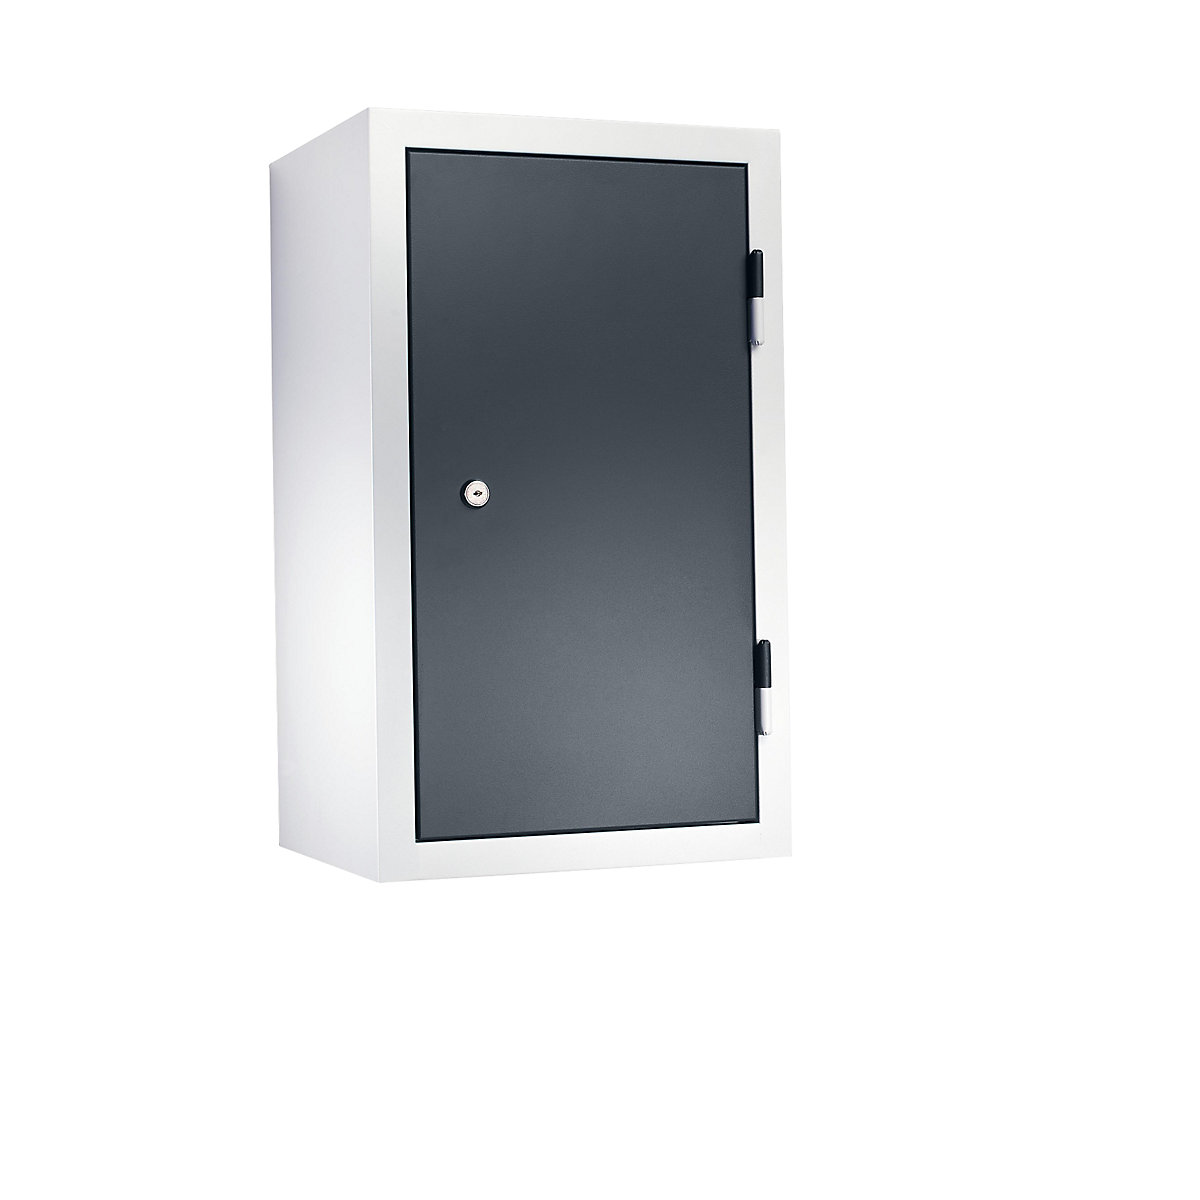 Dílenská závěsná skříň – eurokraft basic, v x š x h 600 x 350 x 320 mm, plné plechové dveře, čedičově šedá RAL 7012-13